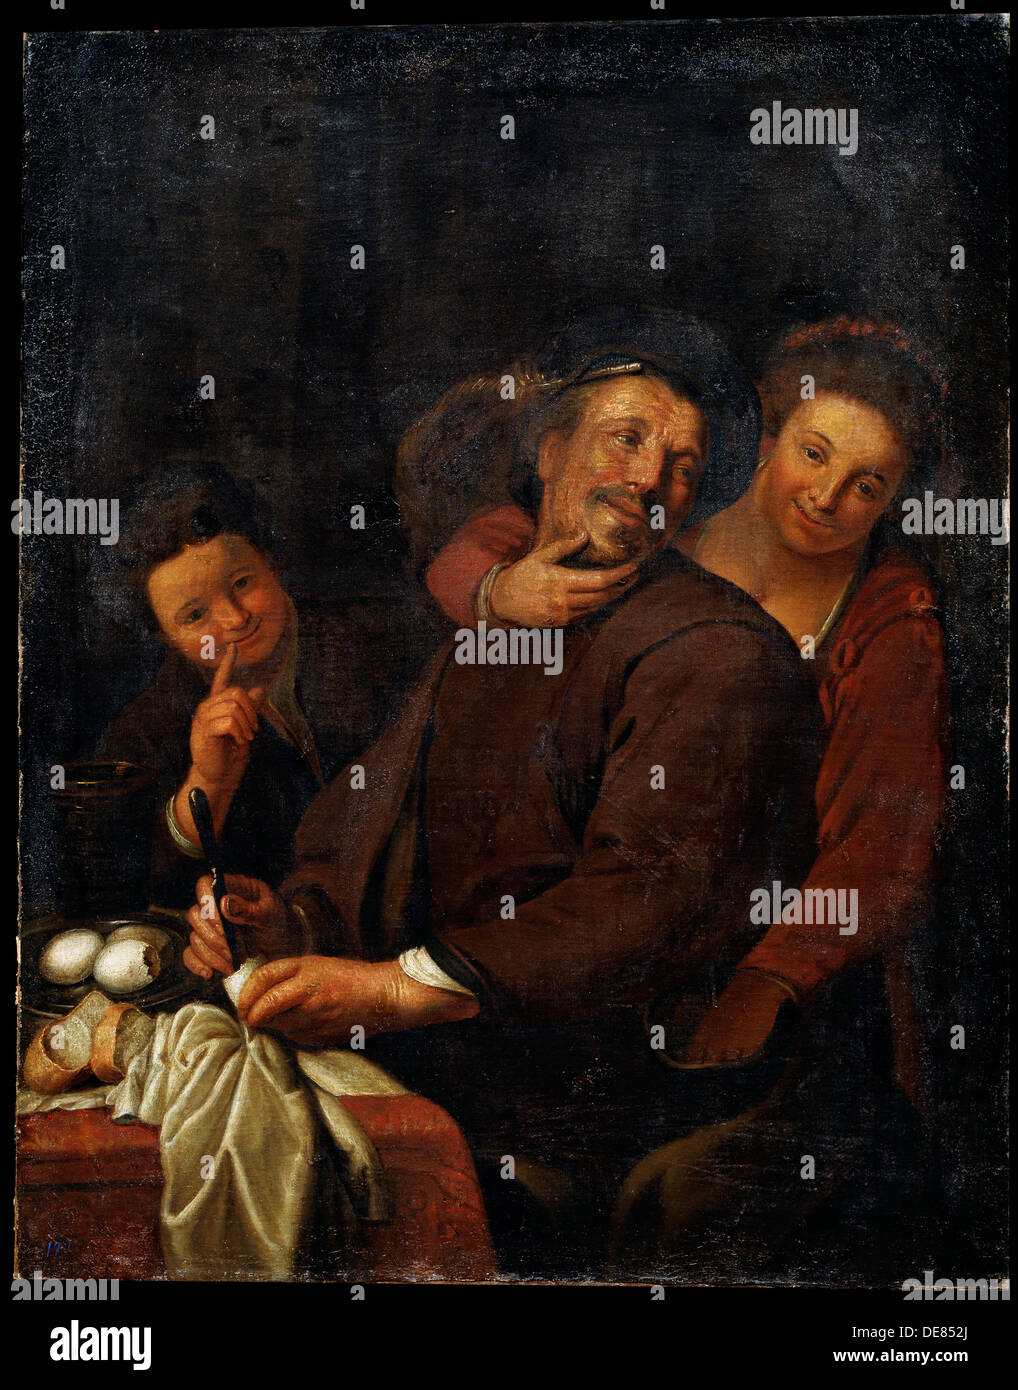 La société 'Joyeux', début du 17e siècle. Artiste : Dutch Master Banque D'Images